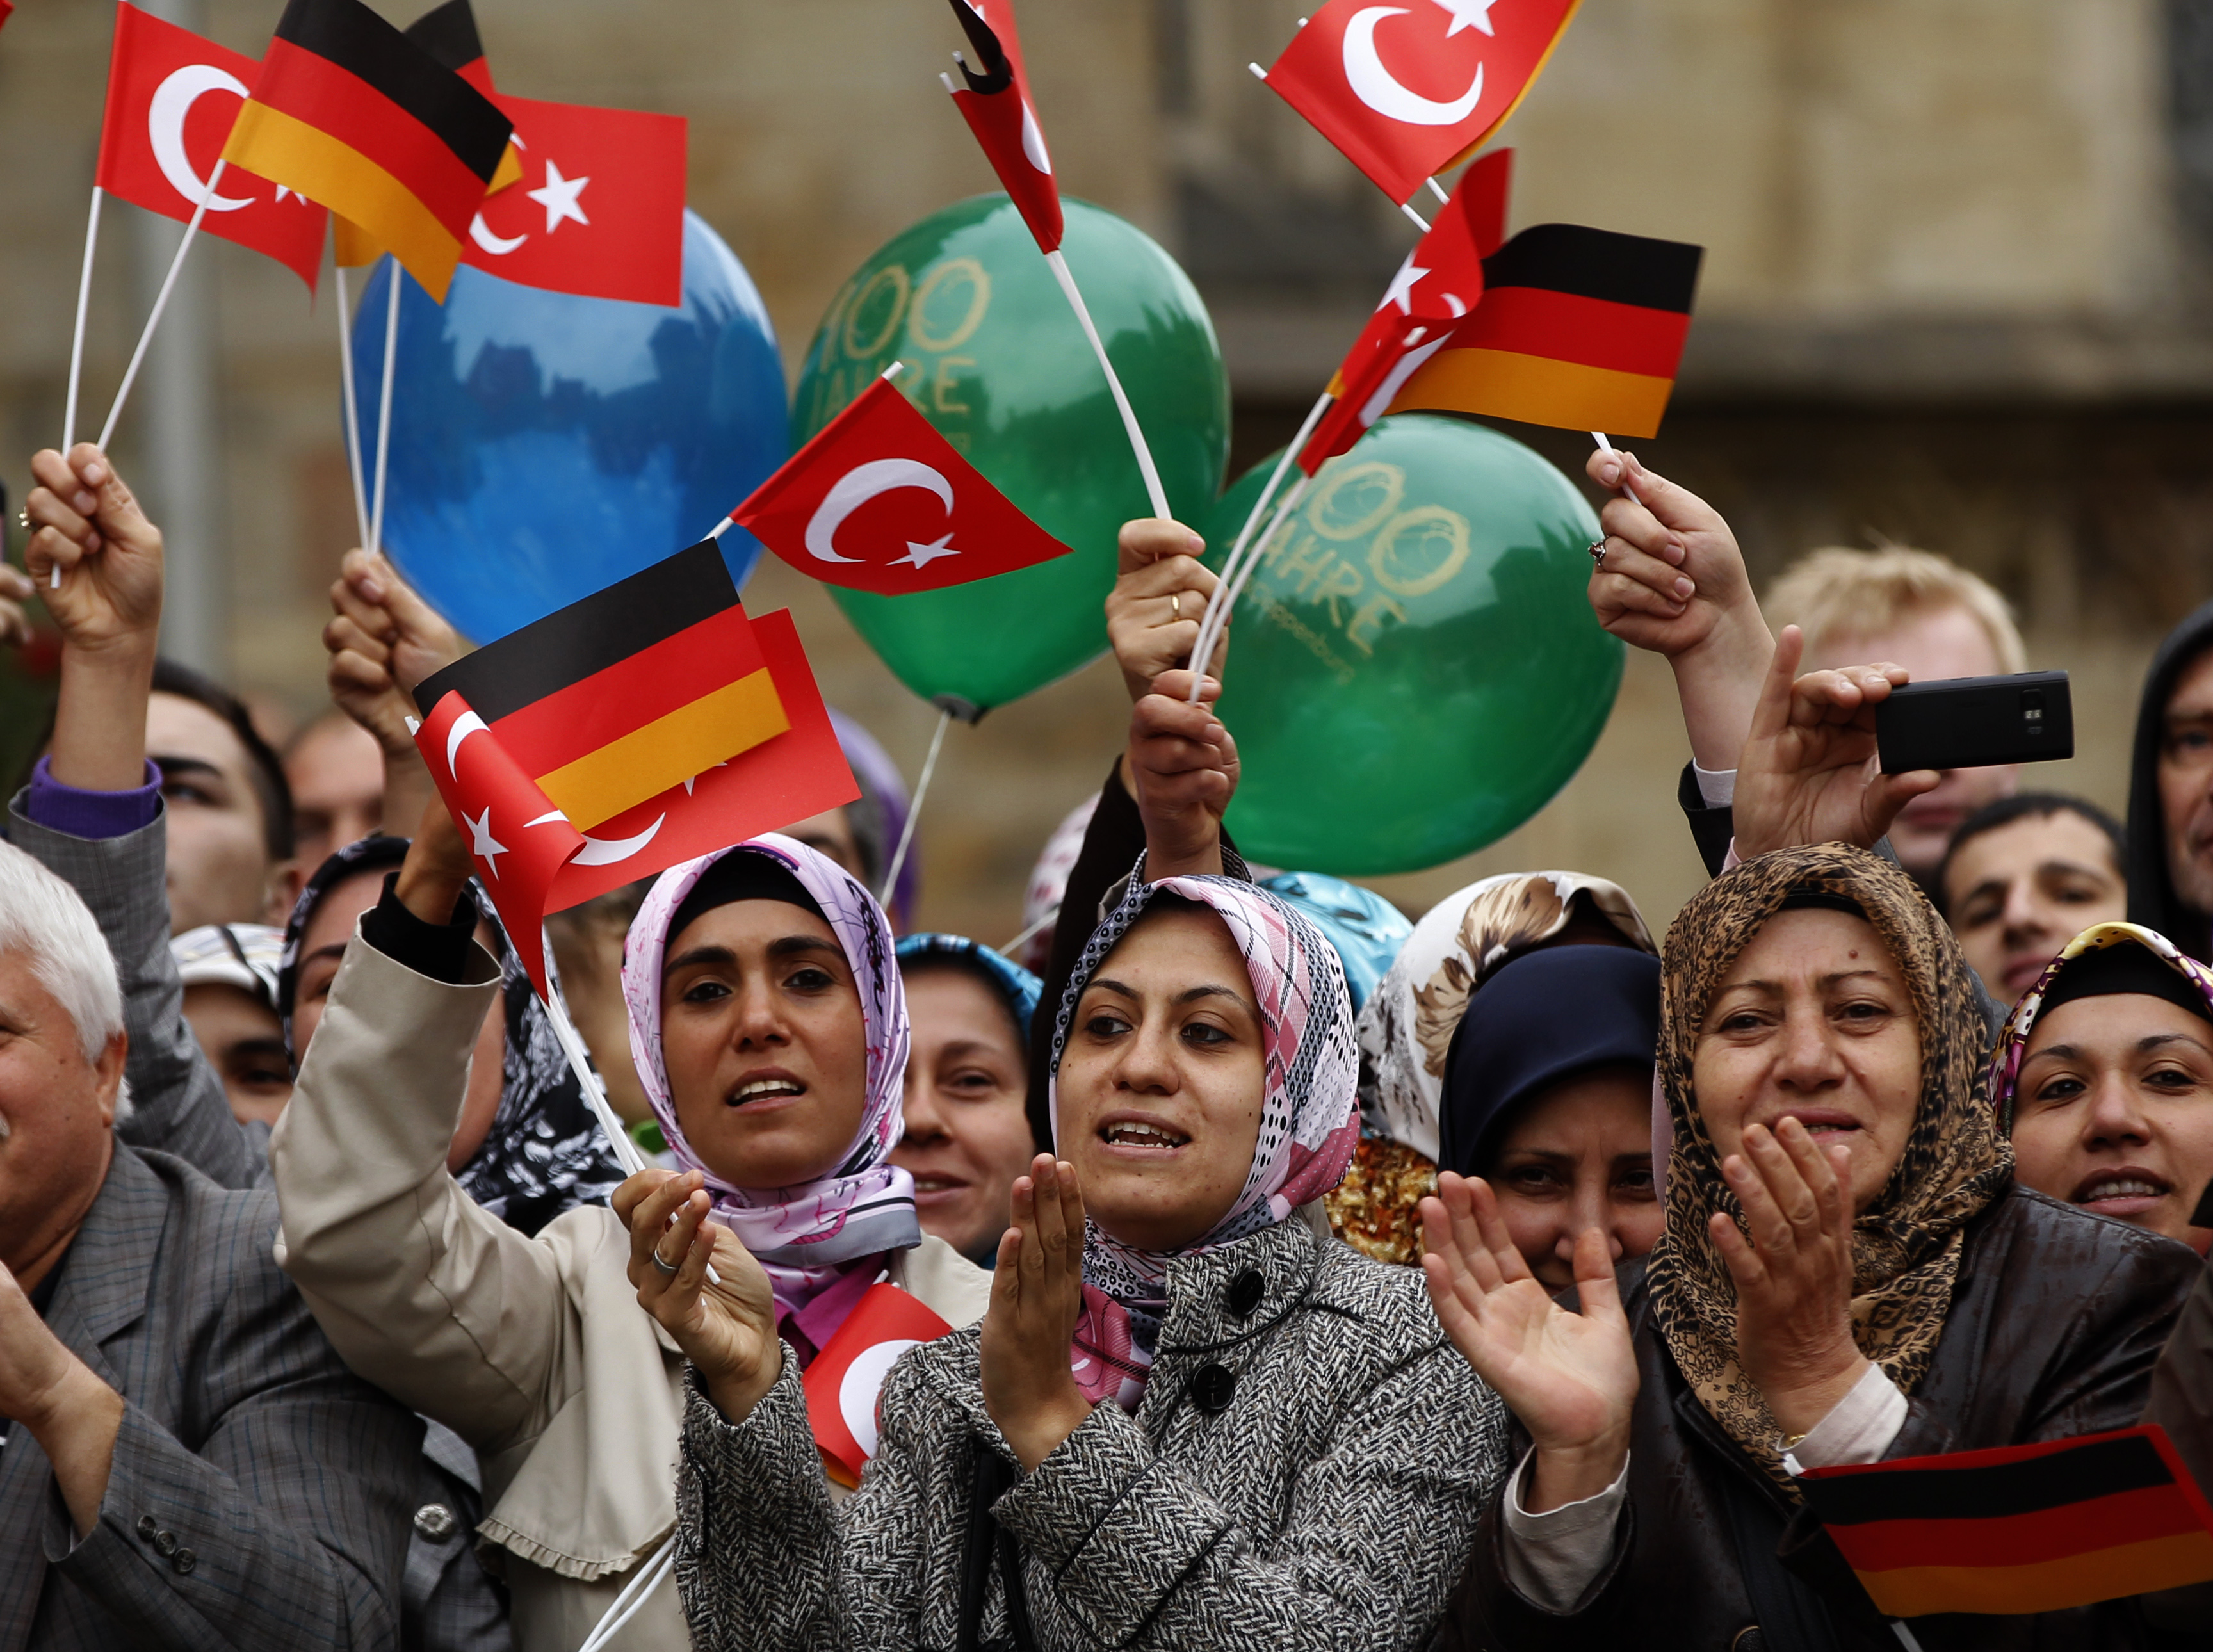 Много турков. Турки в Европе. Мусульмане в Германии. Арабы в Германии. Турки в Германии.